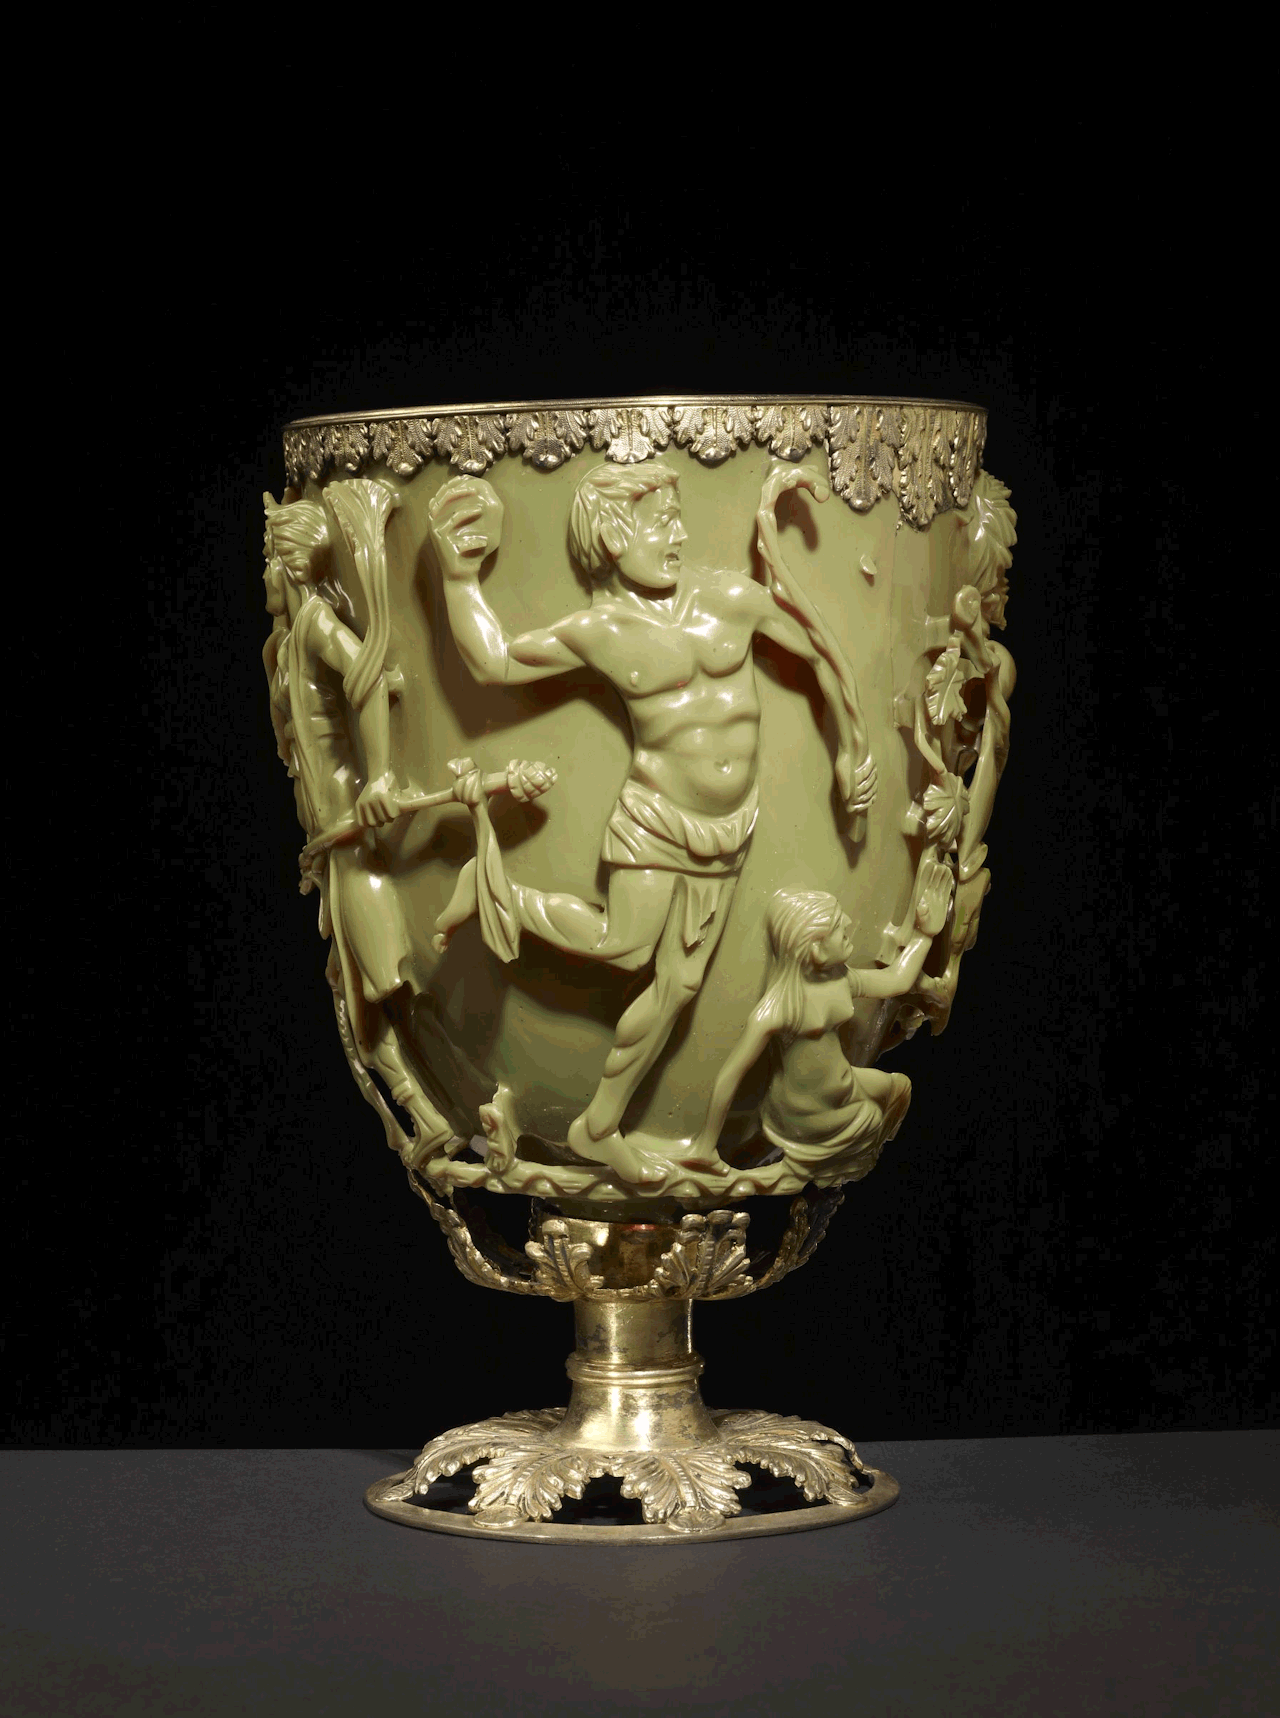 Roman Lycurgus Cup is een 1,600 jaar oude jadegroene Romeinse kelk. Wanneer je een lichtbron erin plaatst, verandert deze op magische wijze van kleur. Het lijkt jadegroen wanneer het van voren wordt verlicht, maar bloedrood wanneer het van achteren of van binnen wordt verlicht.